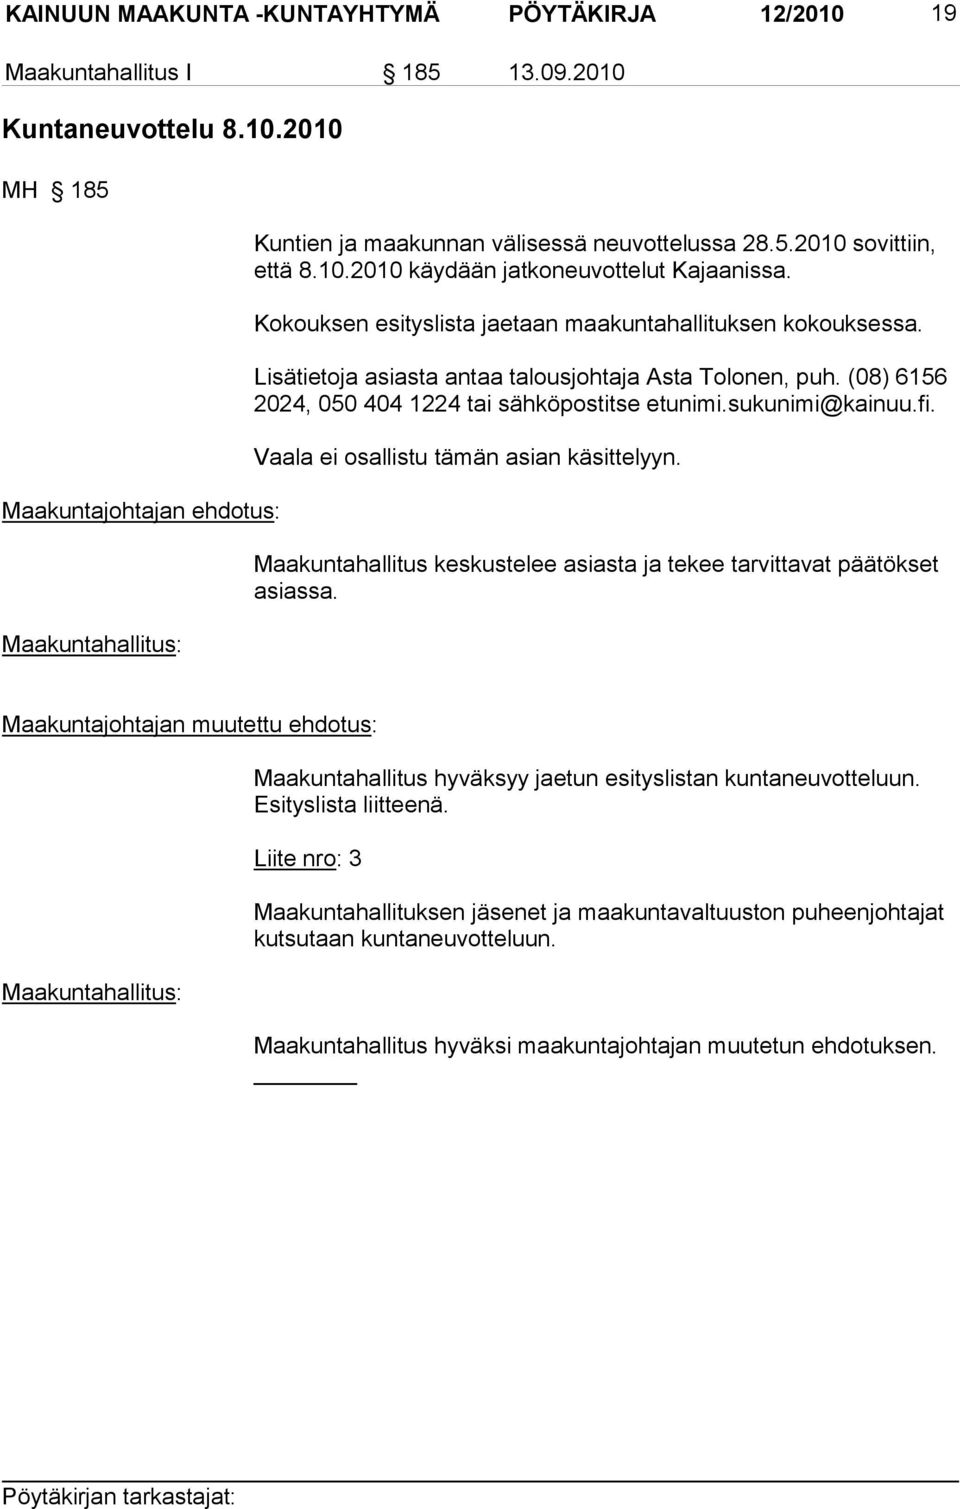 (08) 6156 2024, 050 404 1224 tai sähköpostitse etunimi.sukunimi@kainuu.fi. Vaala ei osallistu tämän asian käsittelyyn. Maakuntahallitus keskustelee asiasta ja tekee tarvittavat päätökset asiassa.